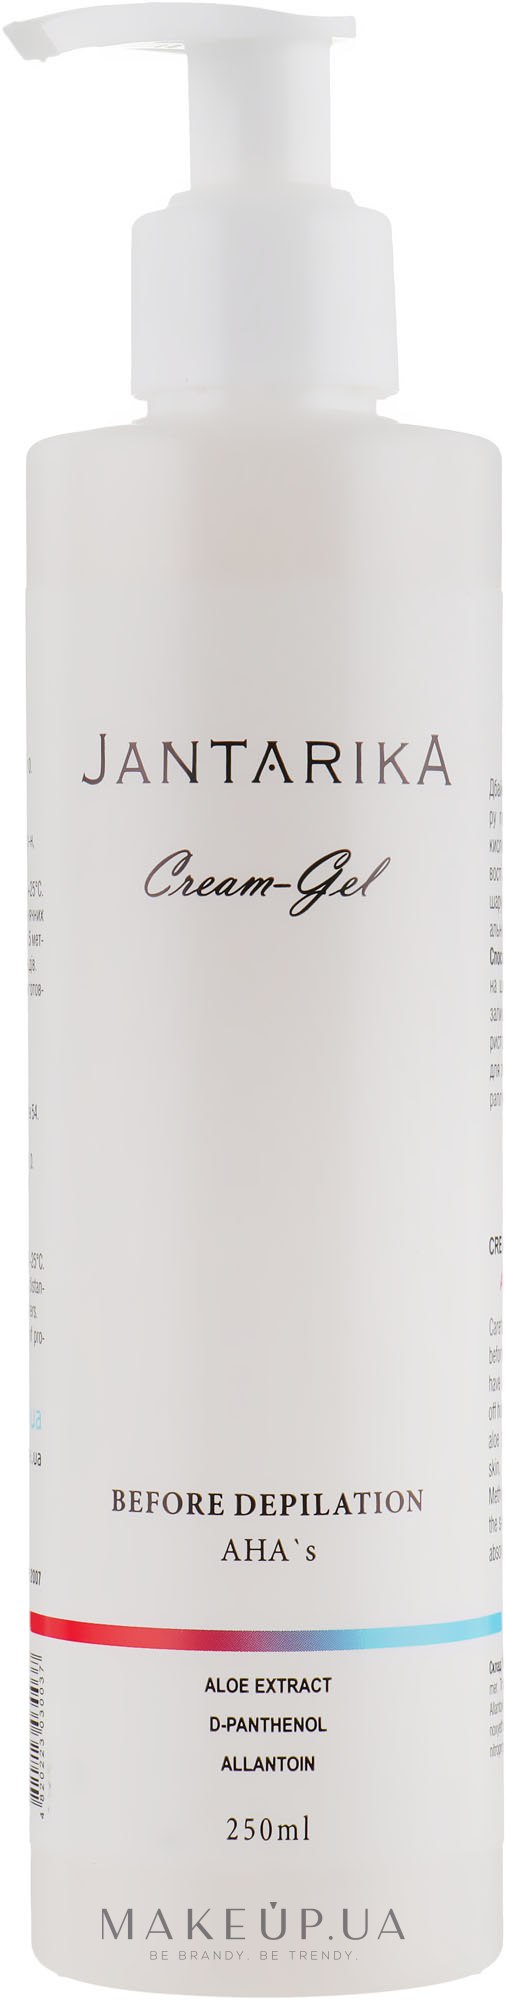 Крем-гель до депиляции - JantarikA Cream-Gel Before Depilation AHA's — фото 250ml